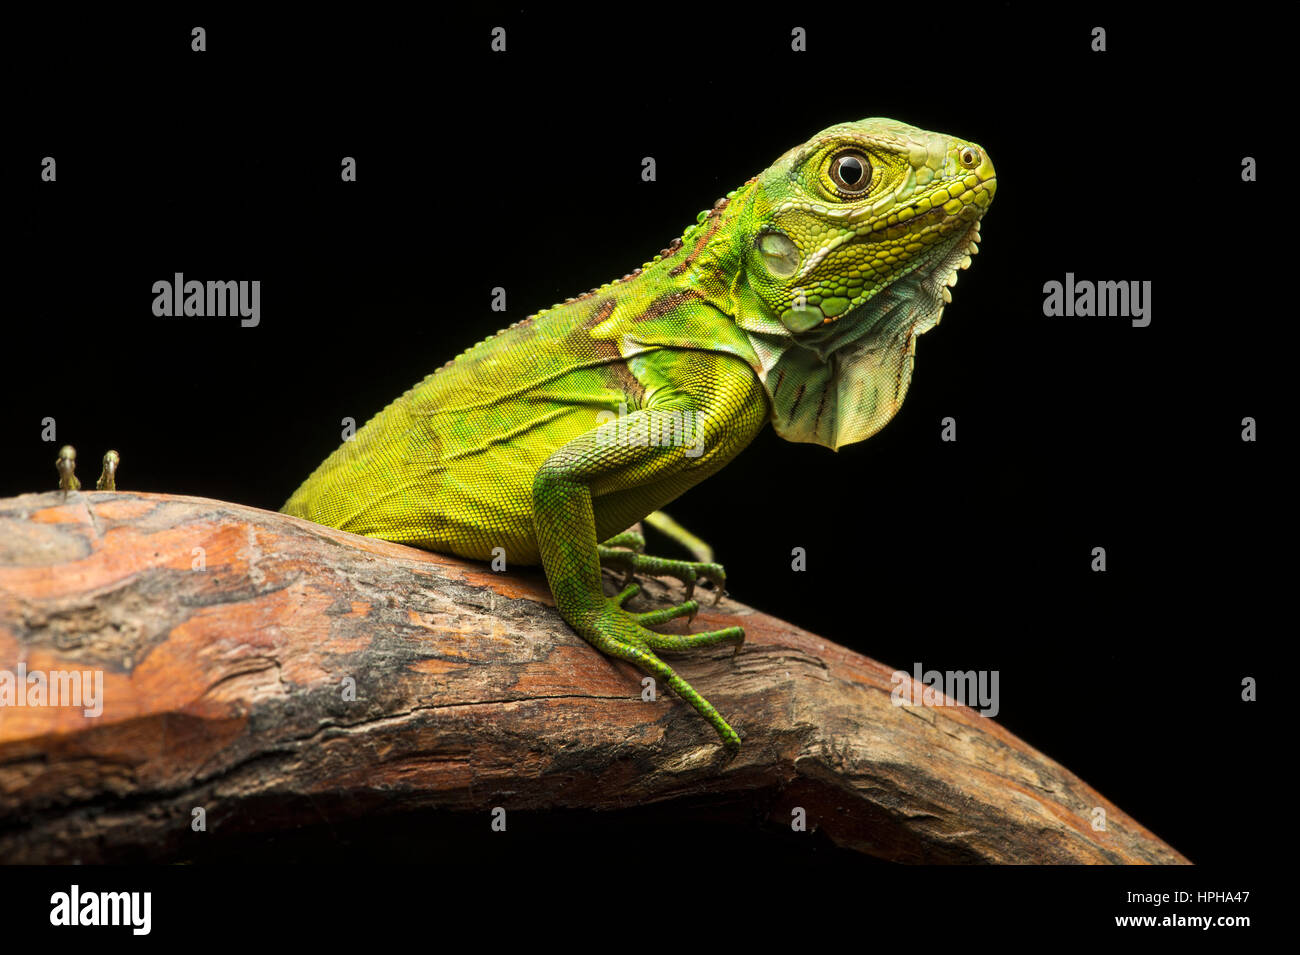 Iguane vert (Iguana iguana), iguane, réserve biologique de la famille Jorupe, forêt tropicale sèche, de l'Ouest, contreforts des Andes Equateur Banque D'Images